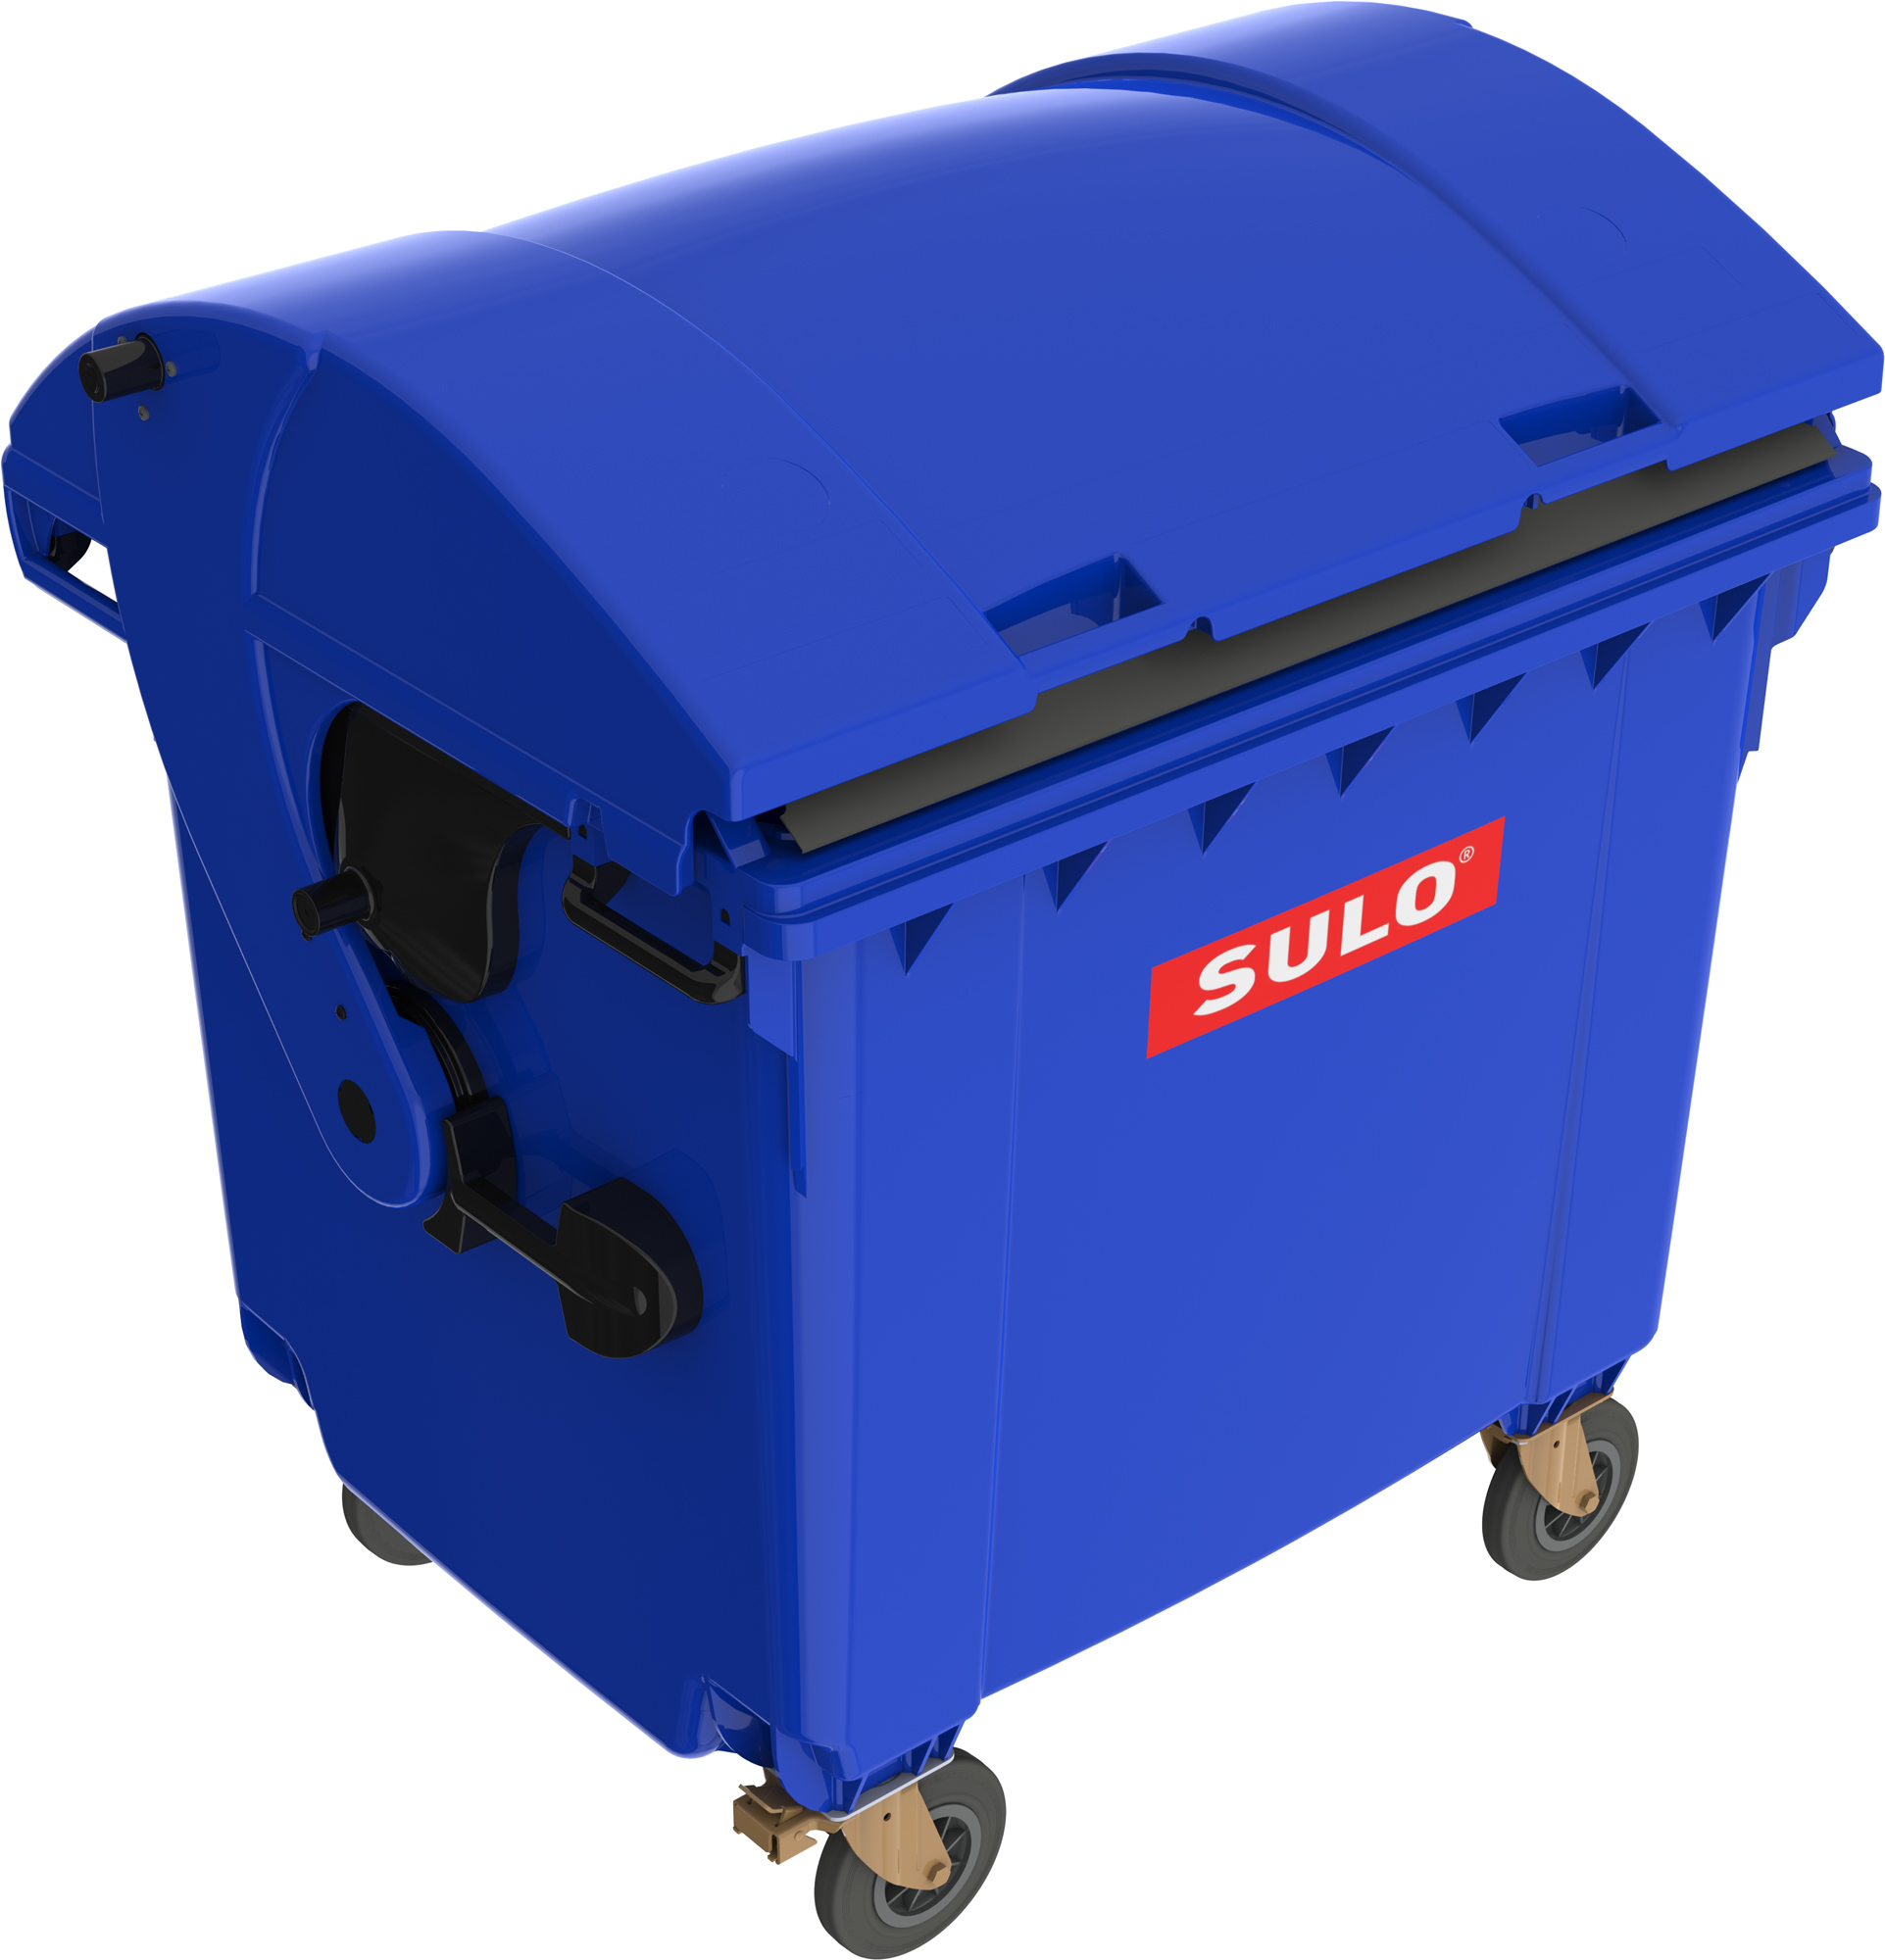 Eurocontainer din material plastic 1100 l albastru cu capac rotund MEVATEC – Transport Inclus sanito.ro